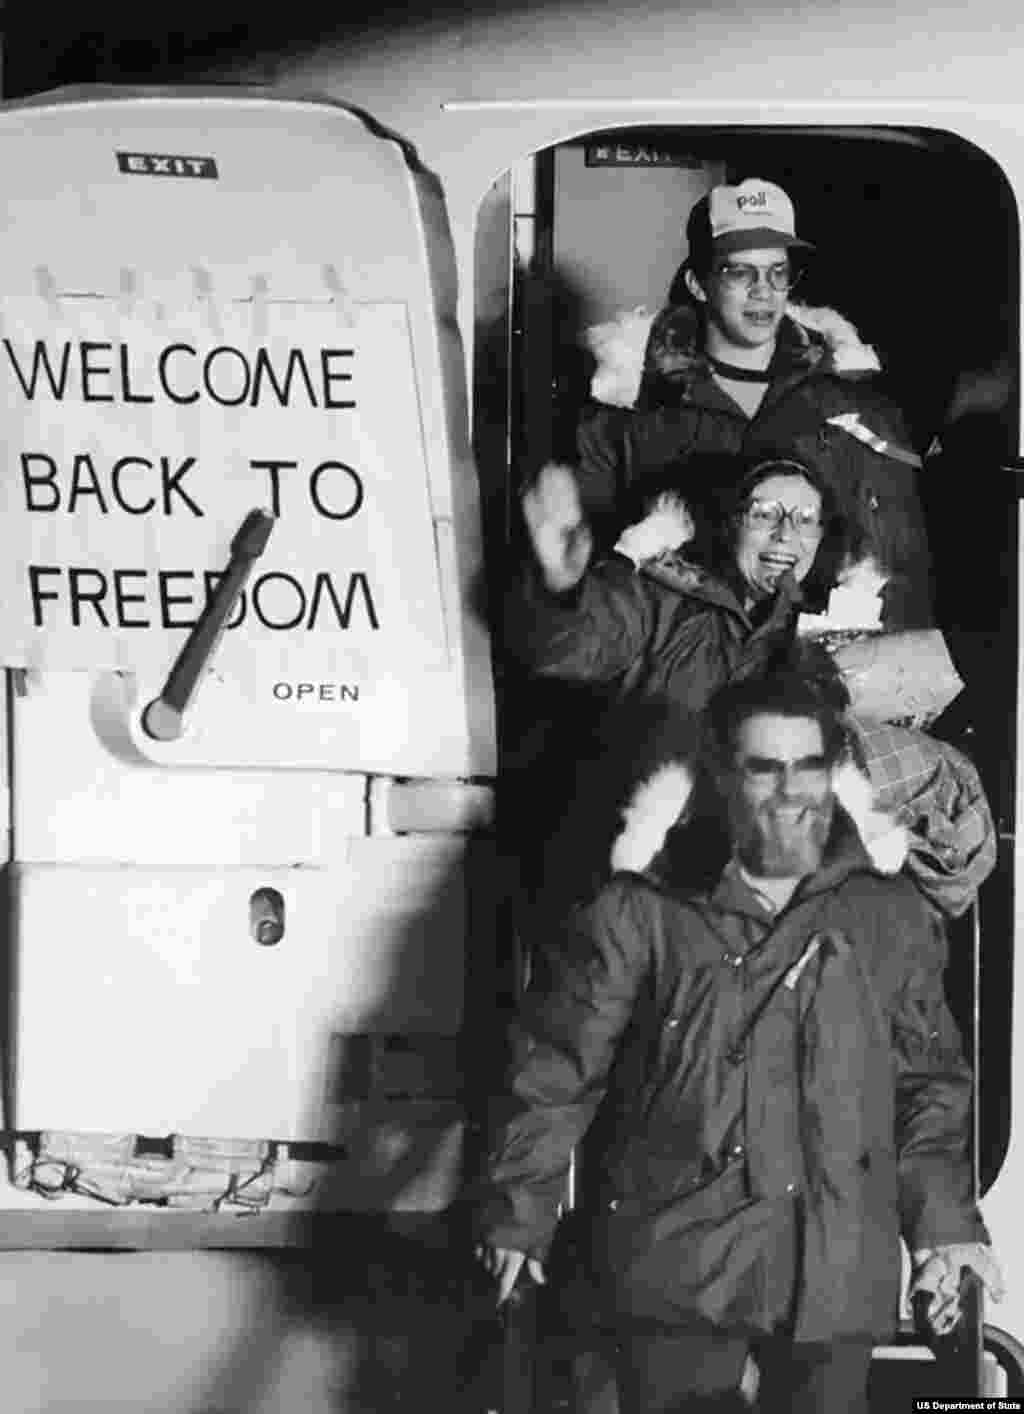 Освобожденные после тяжелого переговорного процесса при посредничестве Алжира 52 заложника прибывают в Висбаден в Западной Германии. 20 января 1981 года. Они были выпущены через несколько минут после приведения Рональда Рейгана к присяге в качестве президента США. В 1980 году было освобождено 14 заложников, в том числе один по медицинским показаниям.